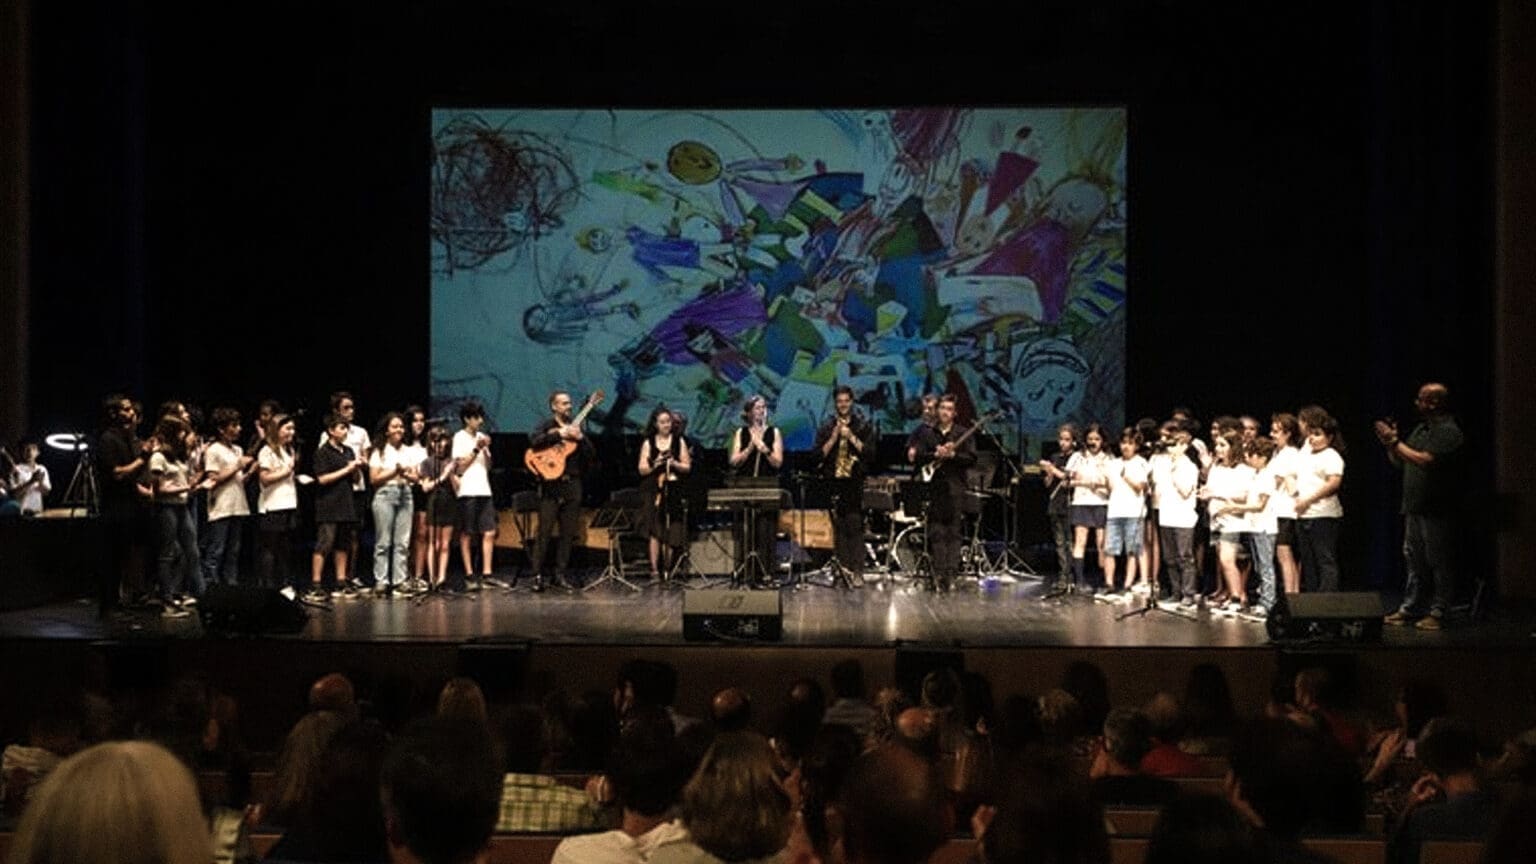 Novo Pólo da Academia de Música e Belas Artes Luísa Todi Abre Portas em Setúbal